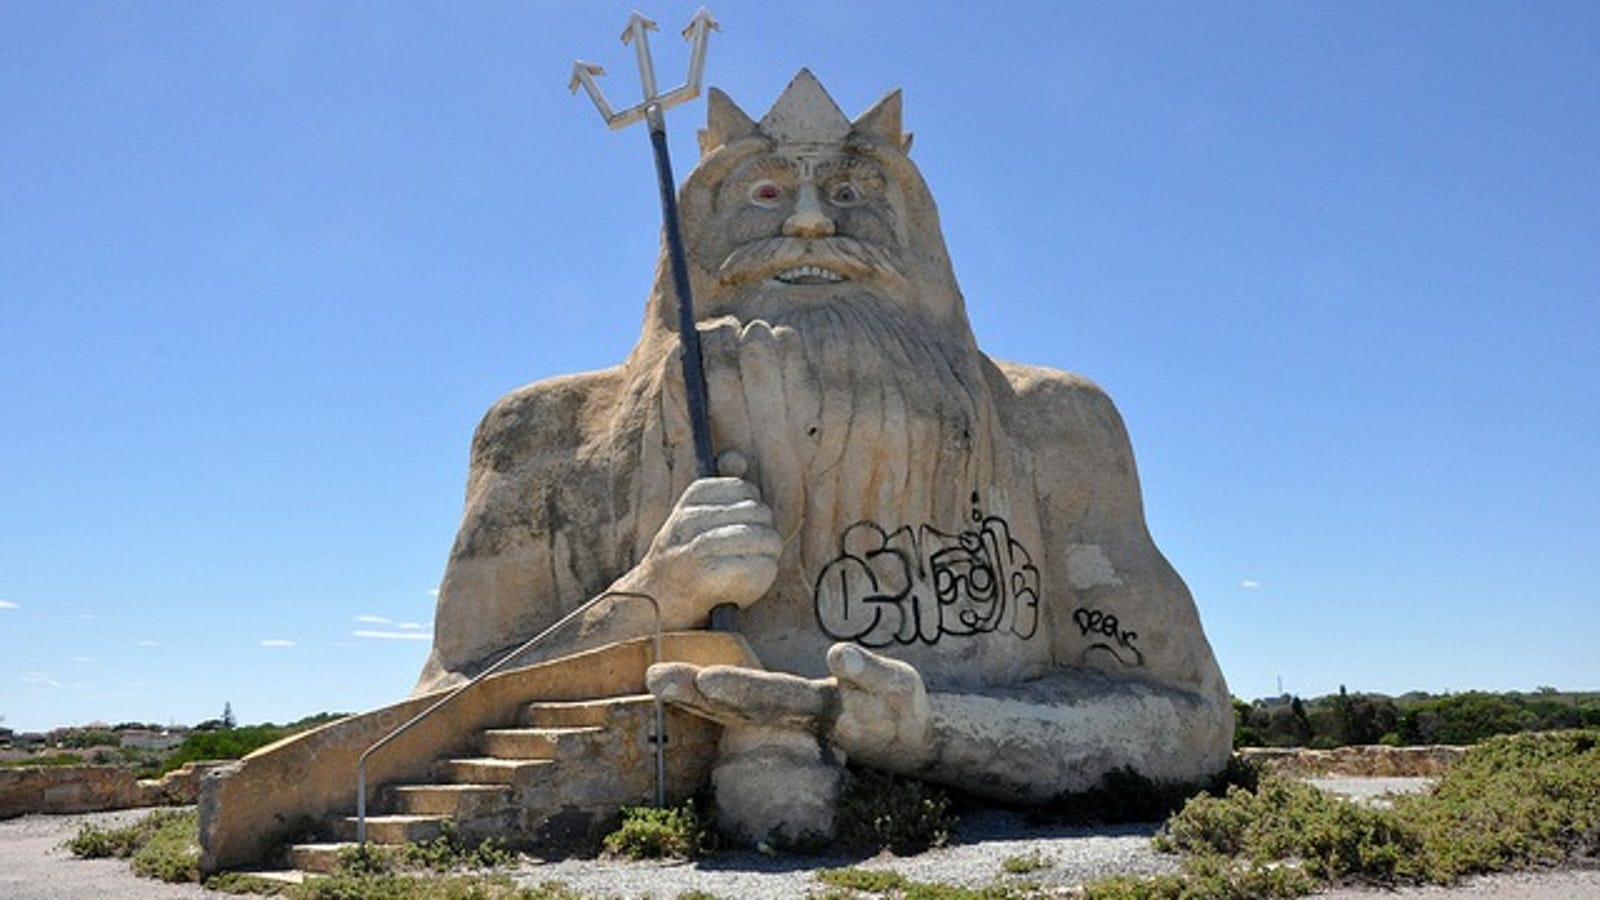 King Neptune still reigns over Western Australia #39 s abandoned marine park